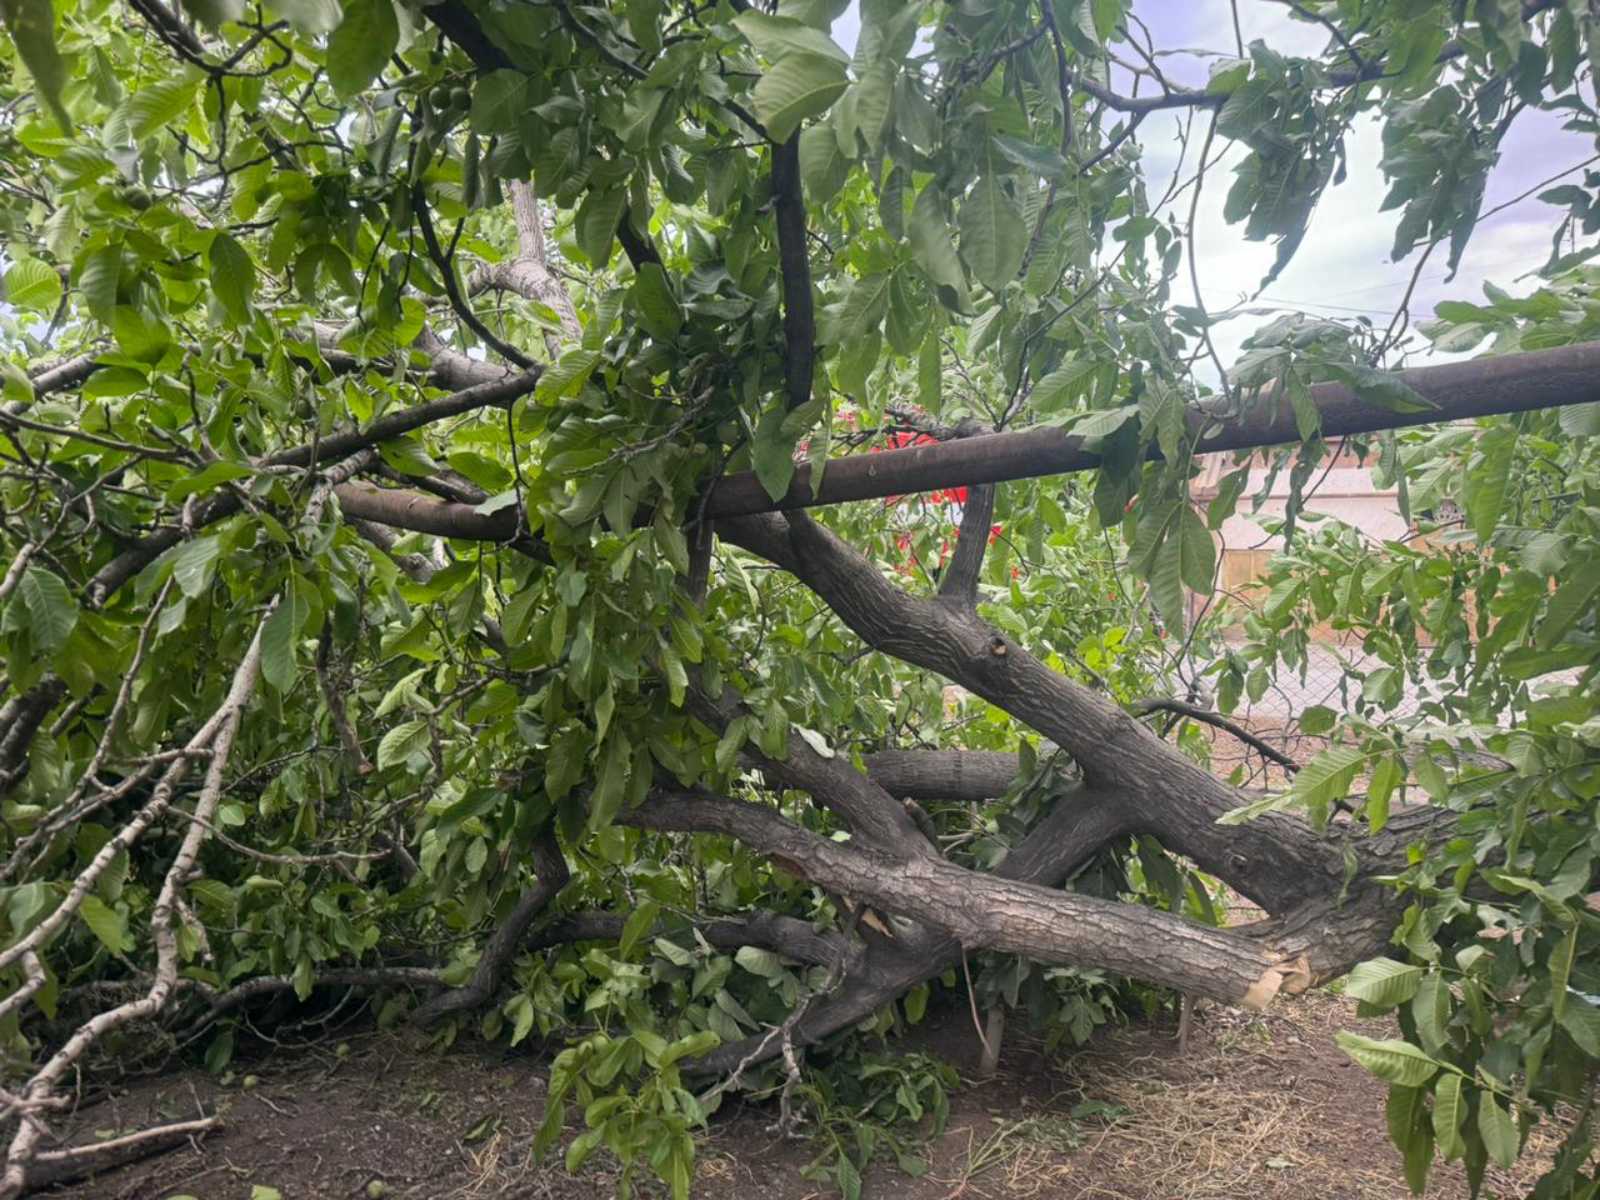 Քամու հետևանքով Երևանում և մի շարք մարզերում ծառեր են տապալվել, վնասվել տանիքներ. Լուսանկարներ